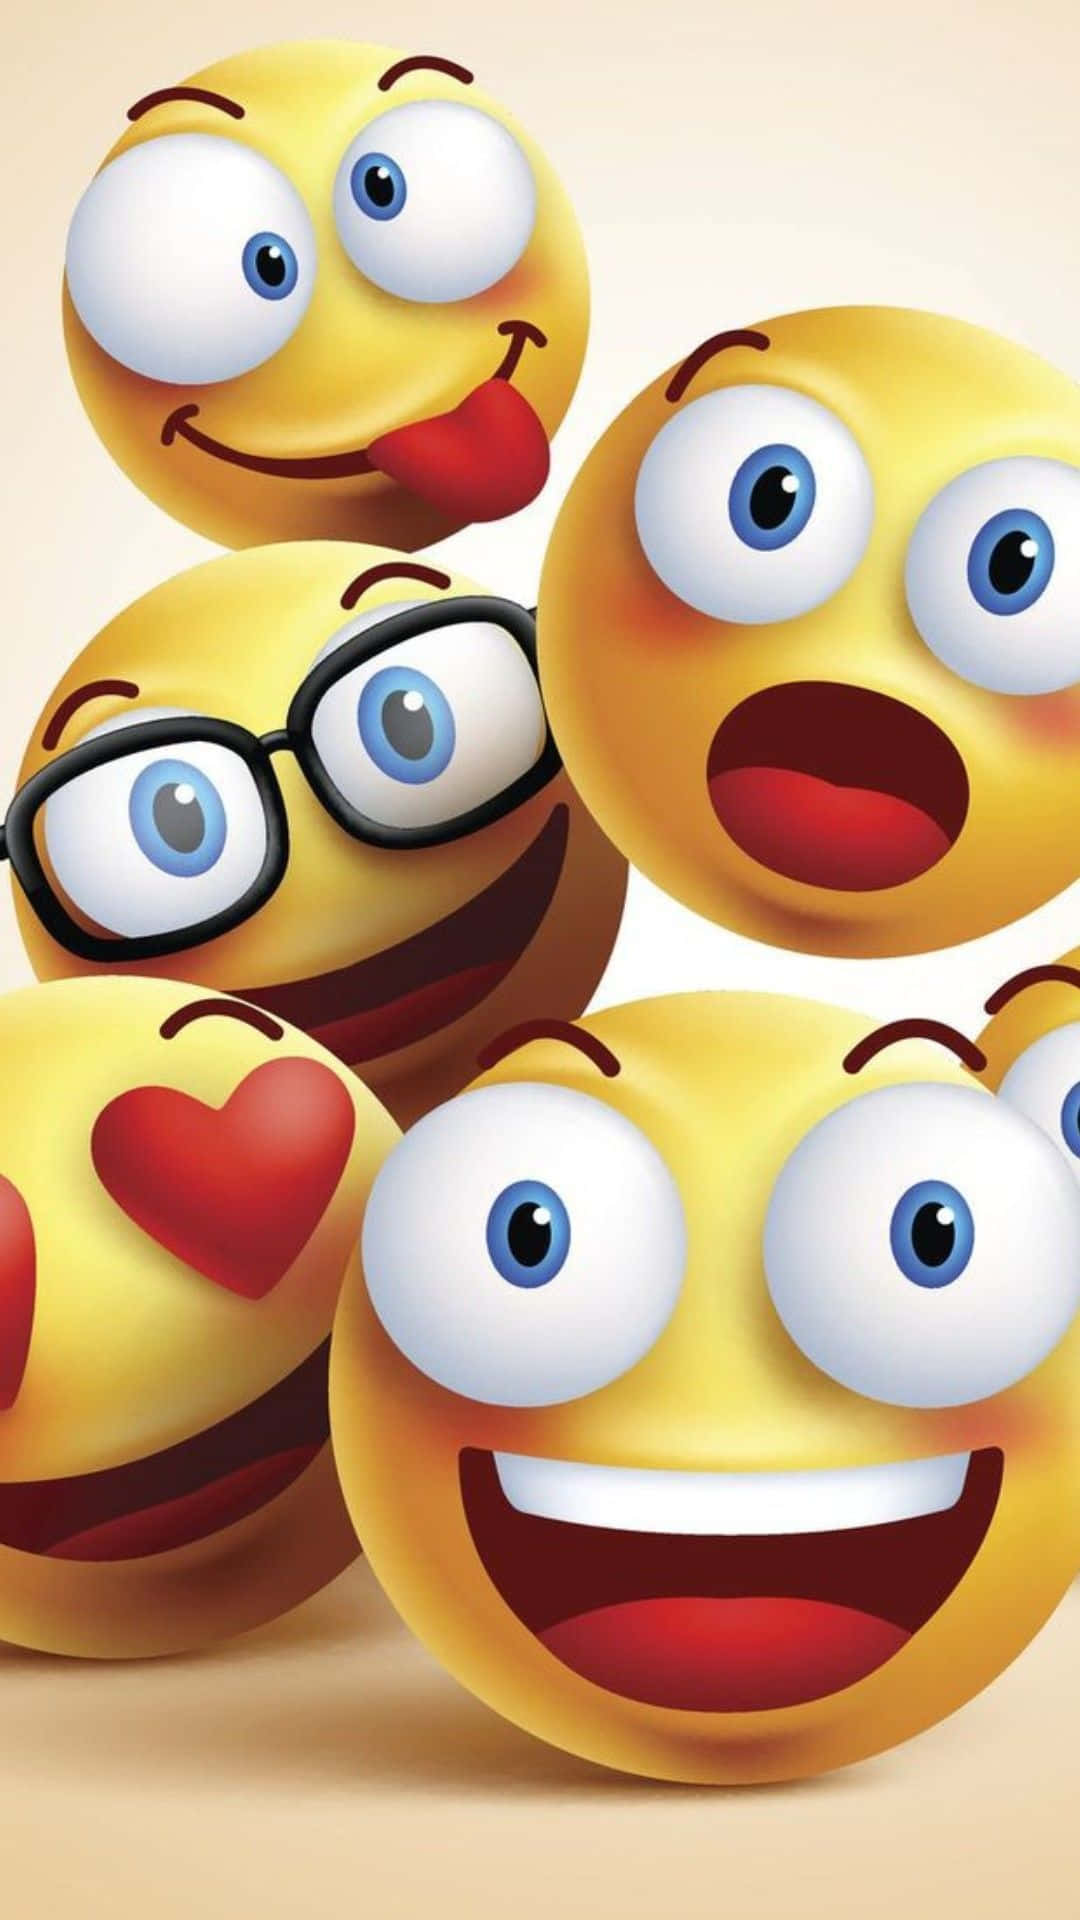 Engruppe Smilende Emojis Med Forskellige Ansigter. Wallpaper